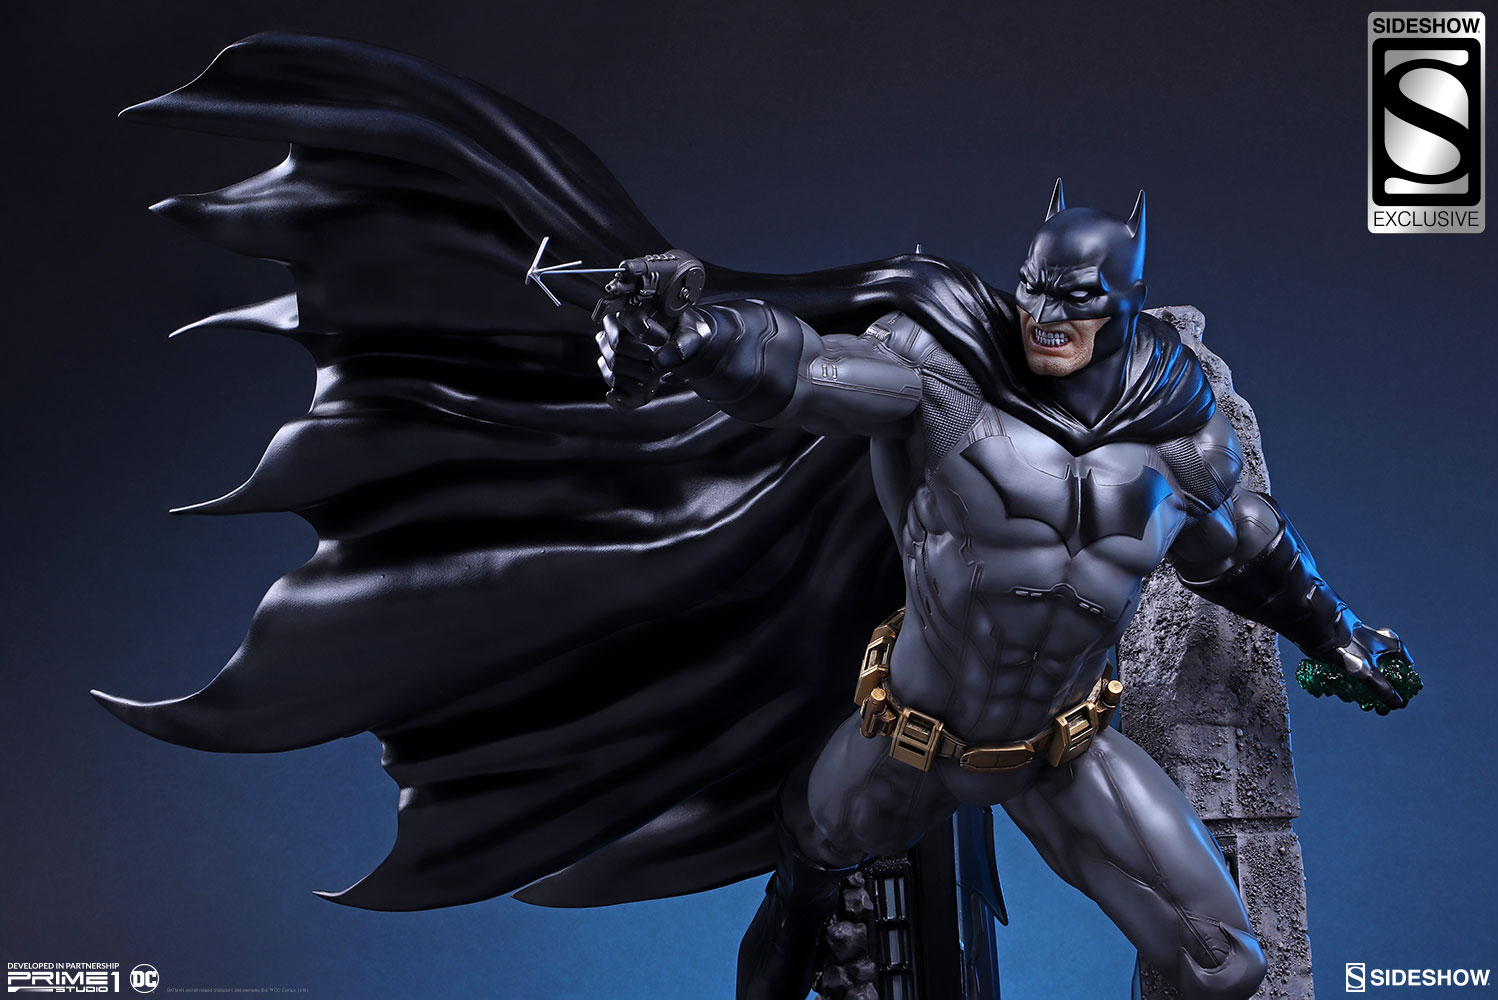 new batman statue